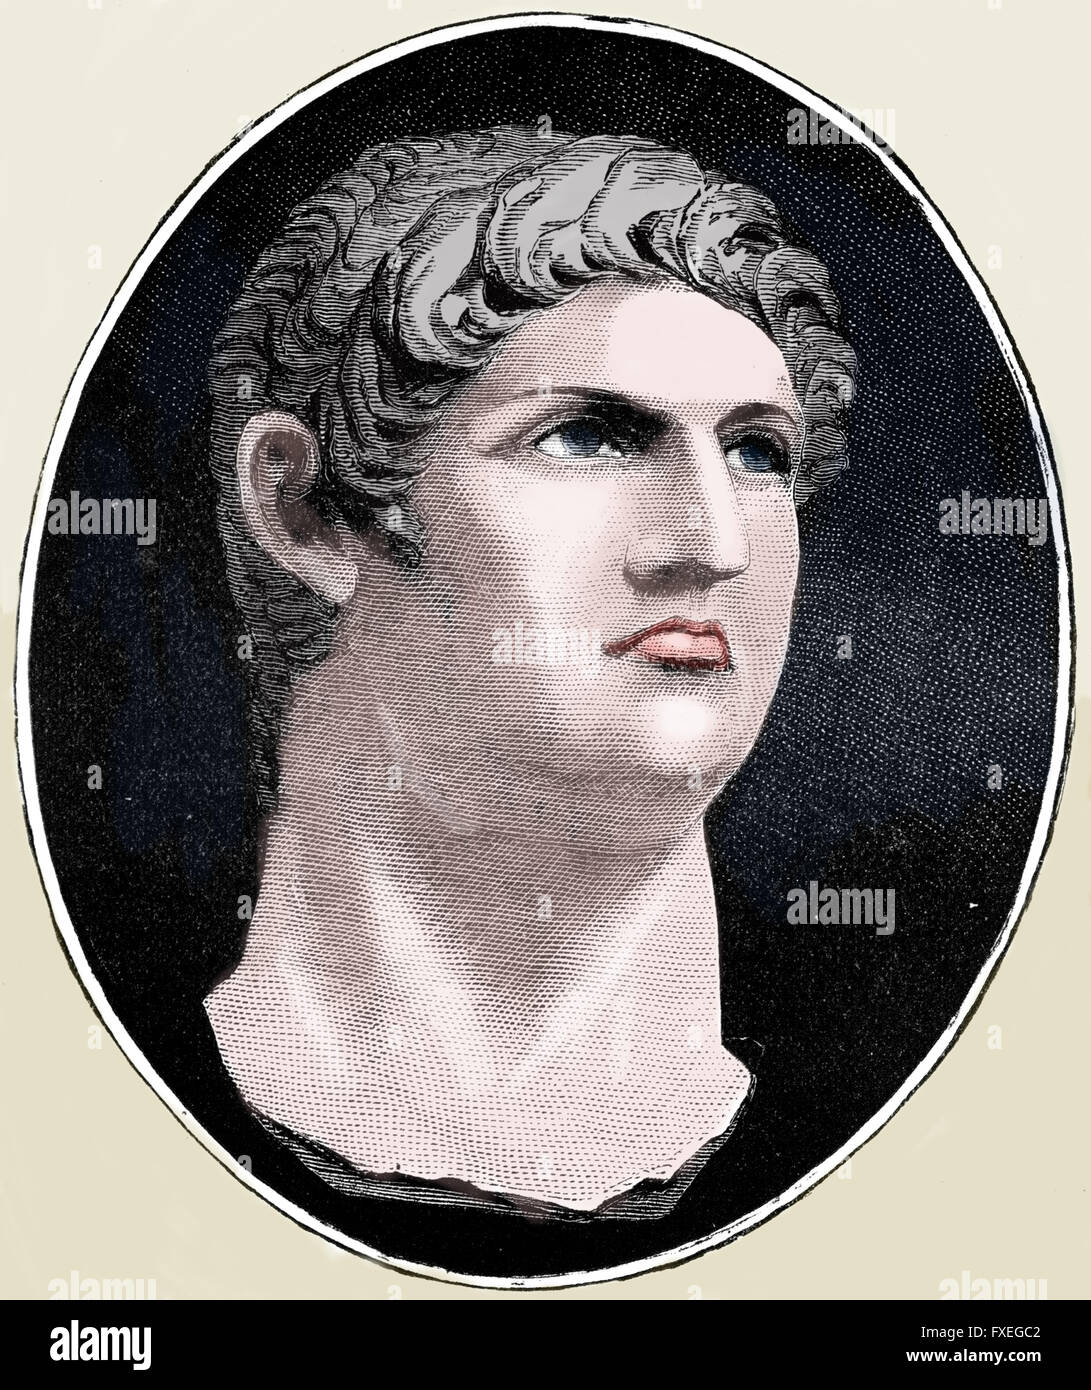 Nero (AD 37 AD-68). 5e empereur de l'Empire romain. La dynastie des Julio-claudiens. La gravure. La couleur. Banque D'Images